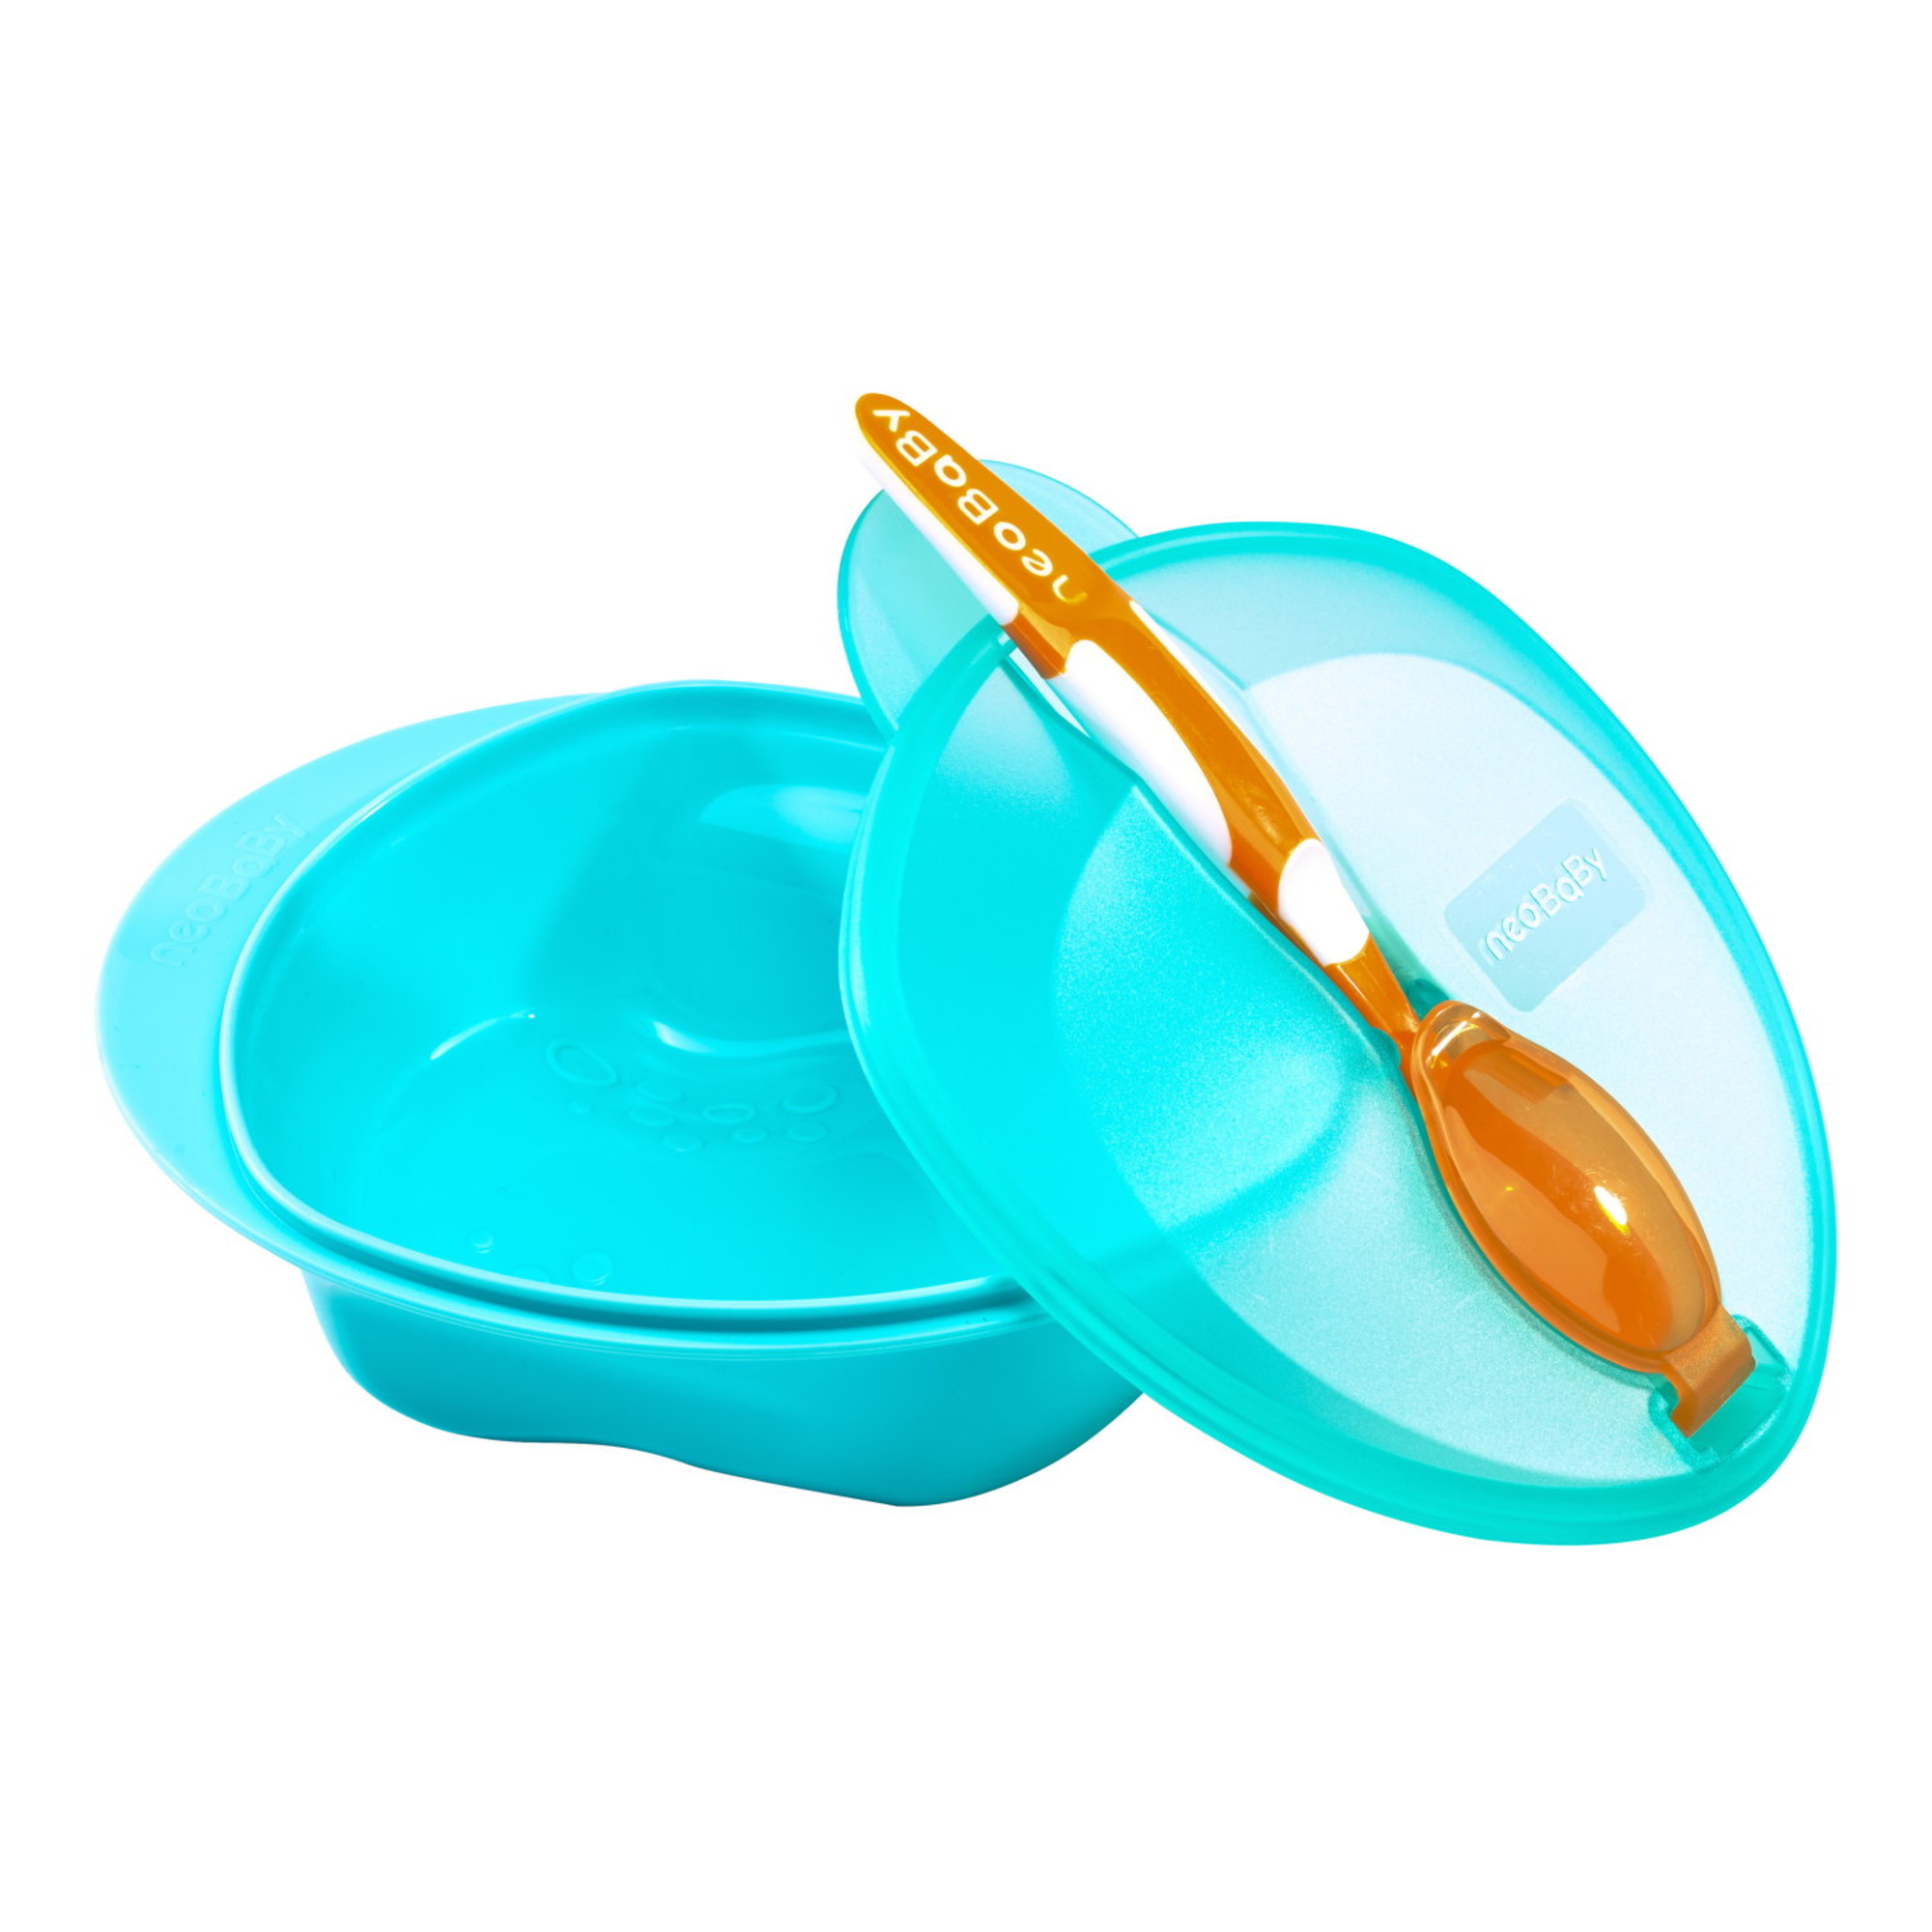 Neobaby  set pappa con cucchiaio 6m + - colori assortiti - - NEO BABY